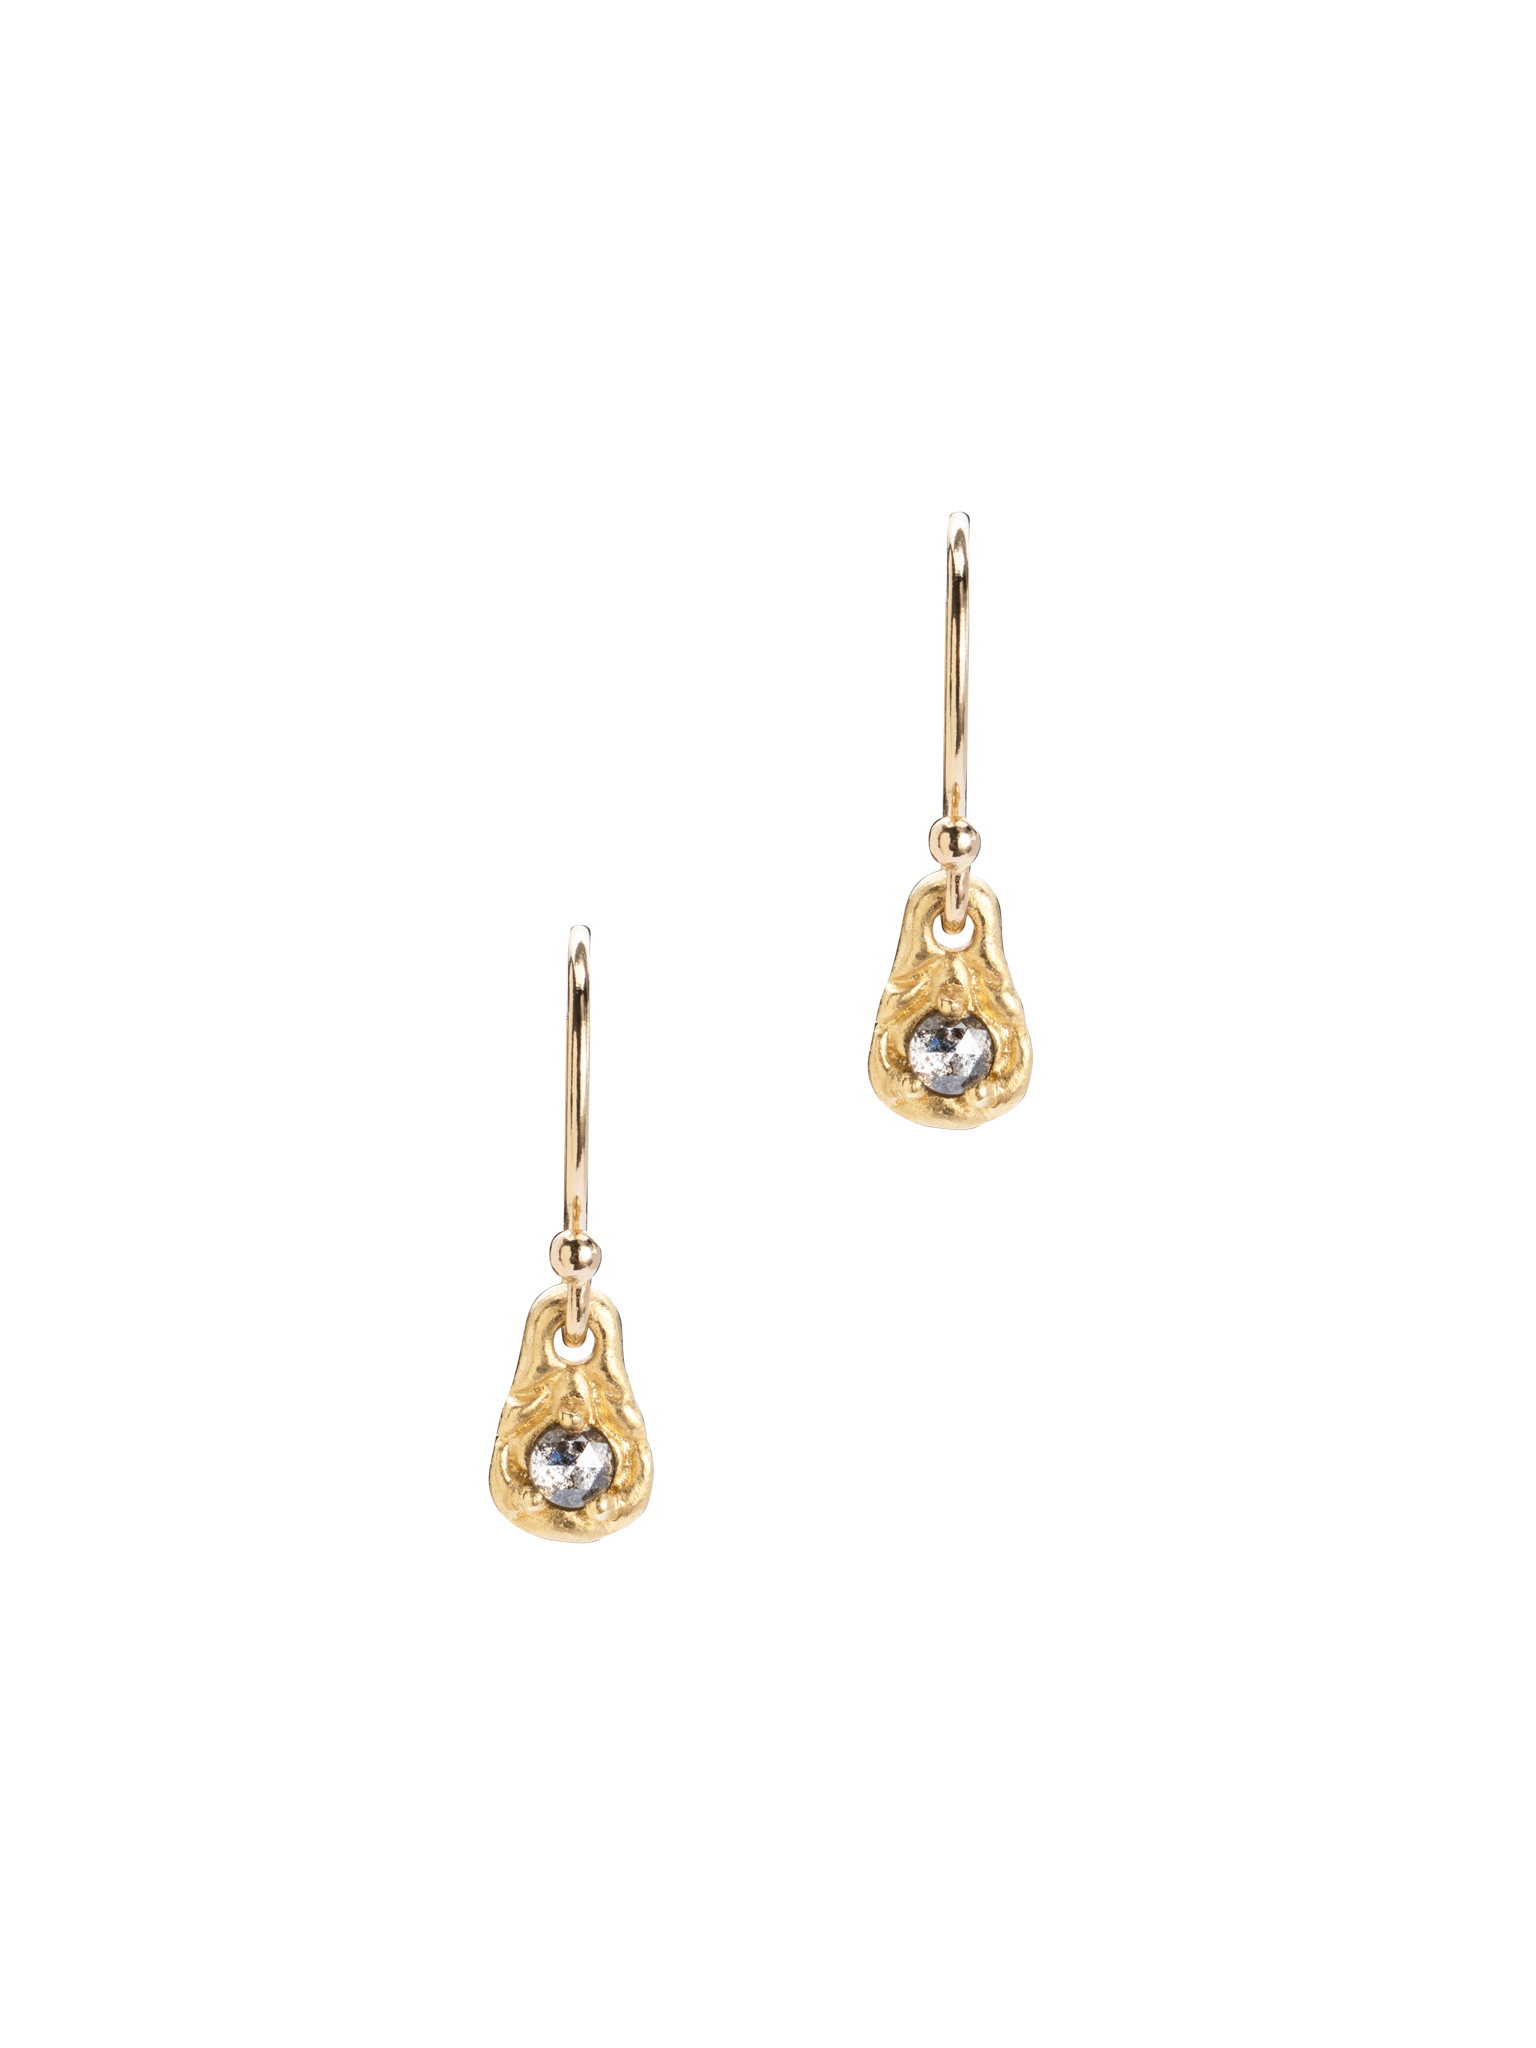 Muse diamond drop earrings